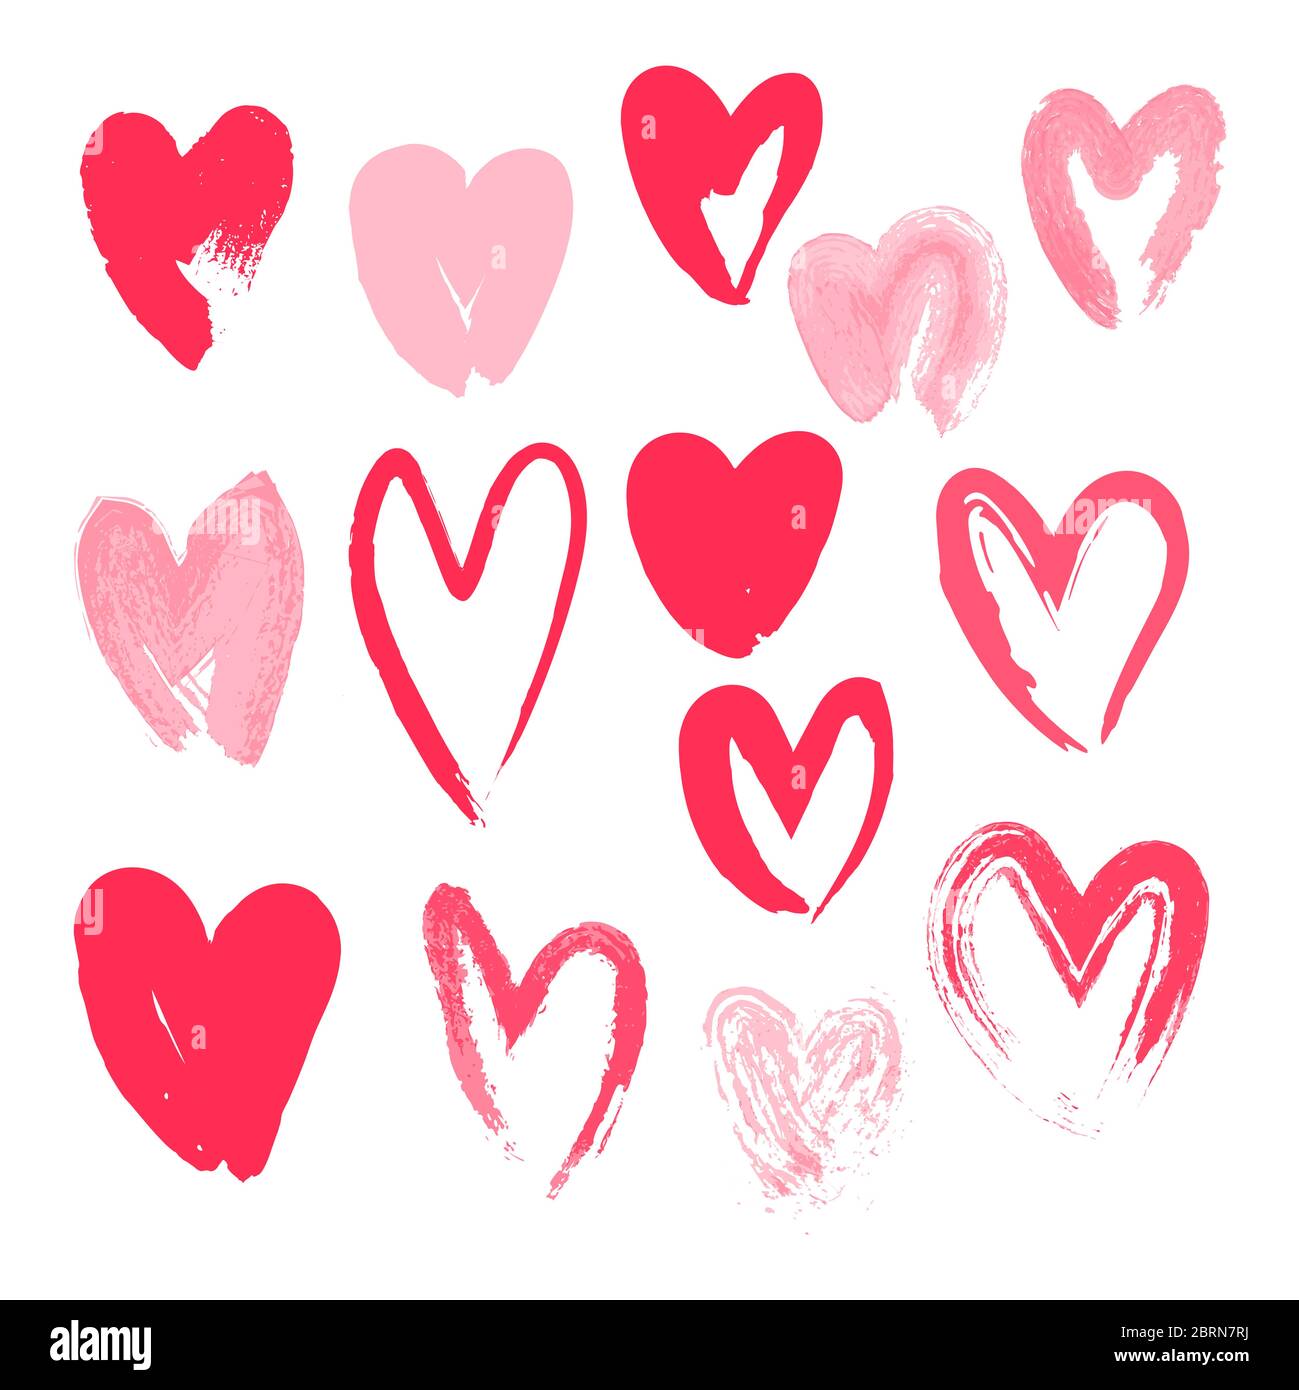 Set von Herzen mit Pinsel gemalt. Hand gezeichnete Kalligraphie Herz isoliert auf weißem Hintergrund. Stock Vektor